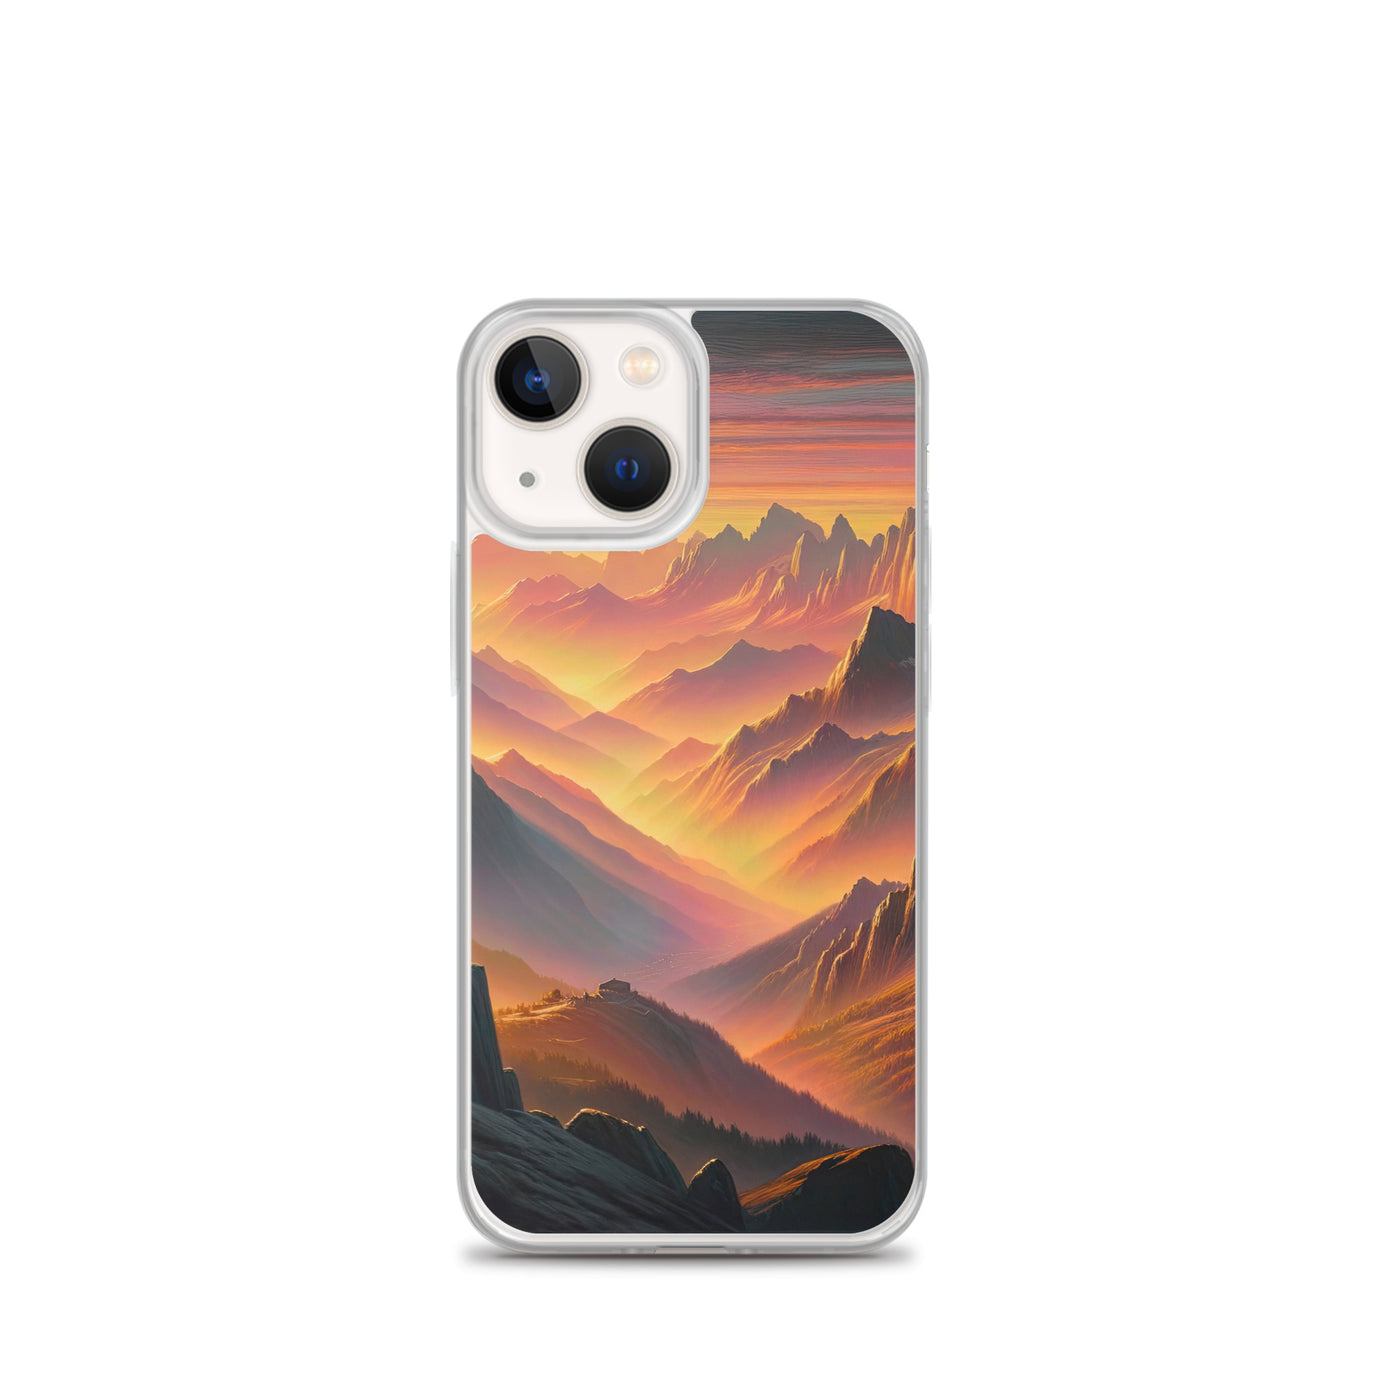 Ölgemälde der Alpen in der goldenen Stunde mit Wanderer, Orange-Rosa Bergpanorama - iPhone Schutzhülle (durchsichtig) wandern xxx yyy zzz iPhone 13 mini